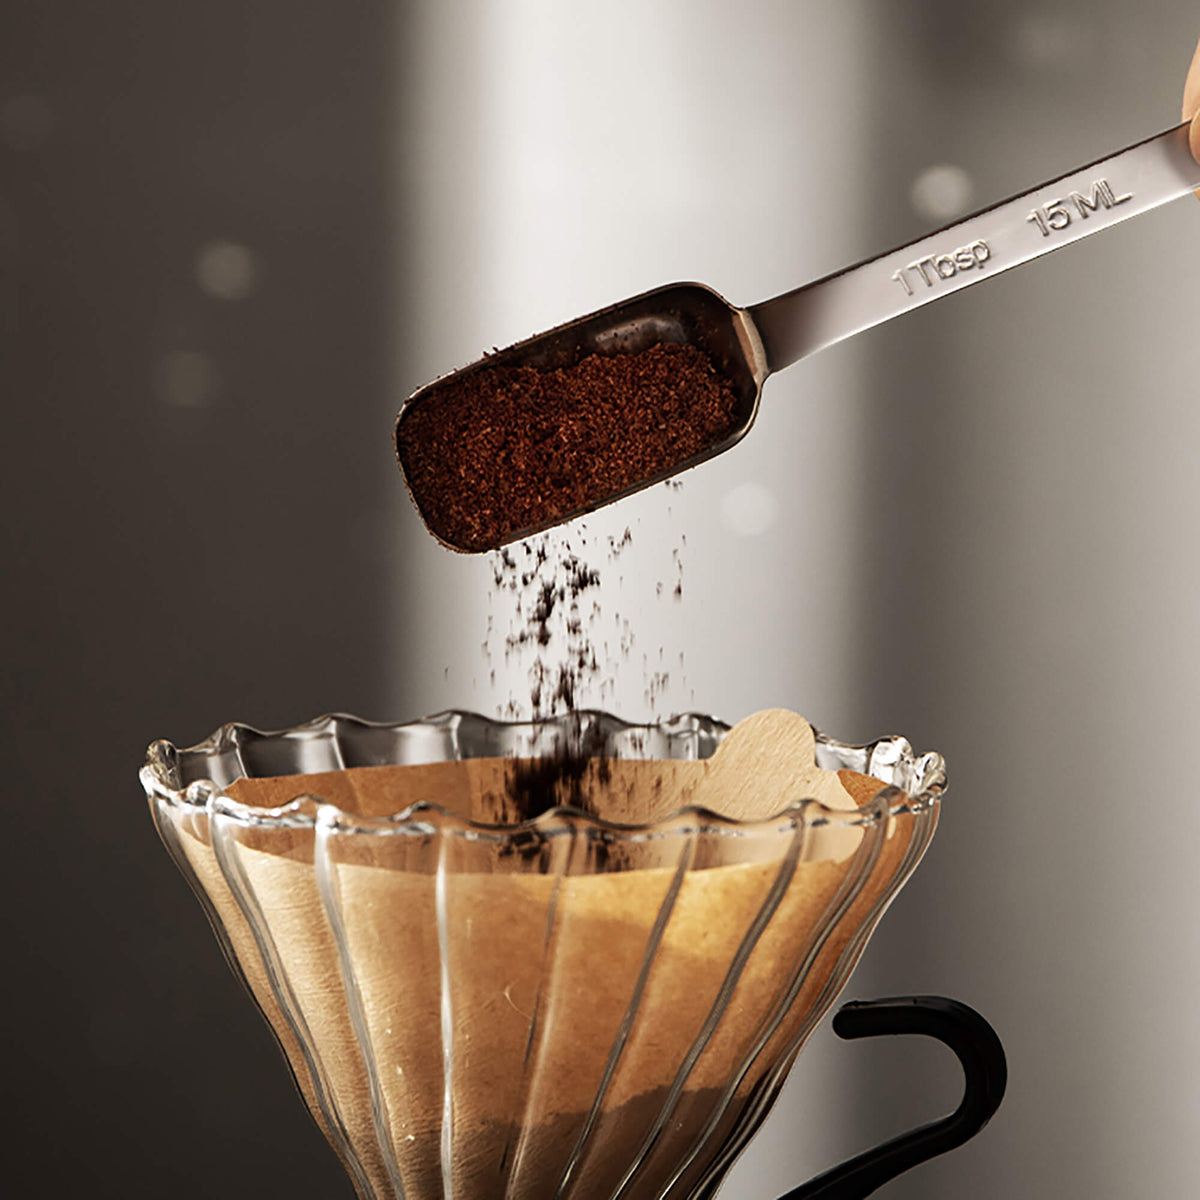 Measuring Coffee Scoop, 304 Stainless Steel Coffee Graduated